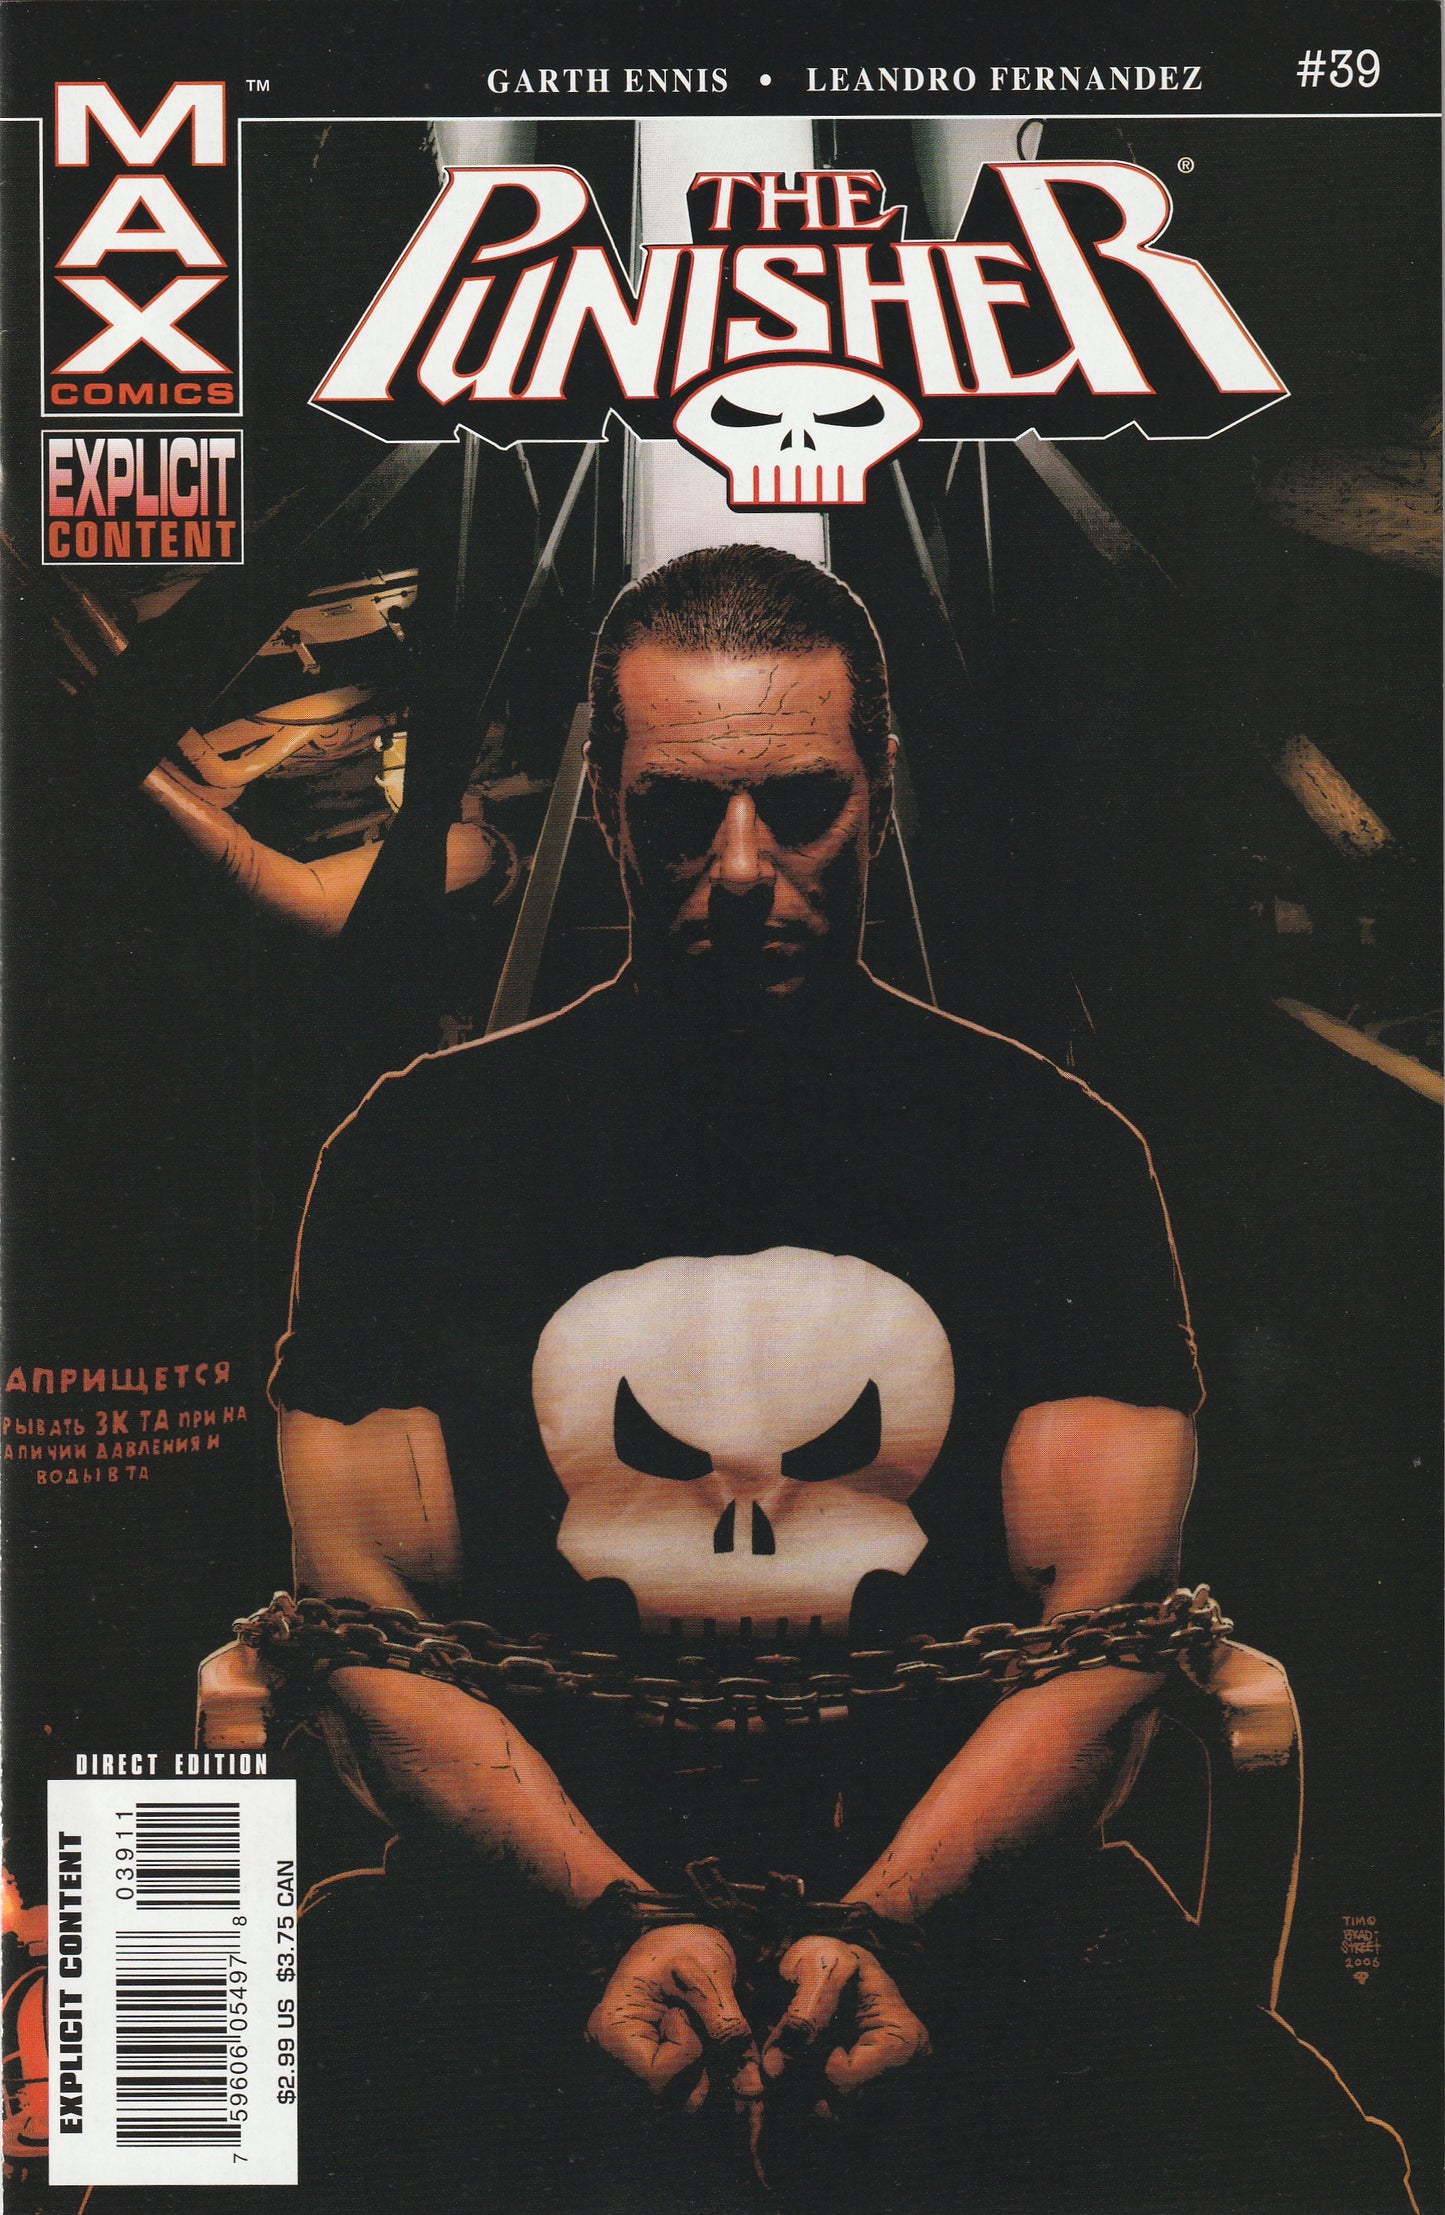 The Punisher #39 (MAX, 2006) - Garth Ennis